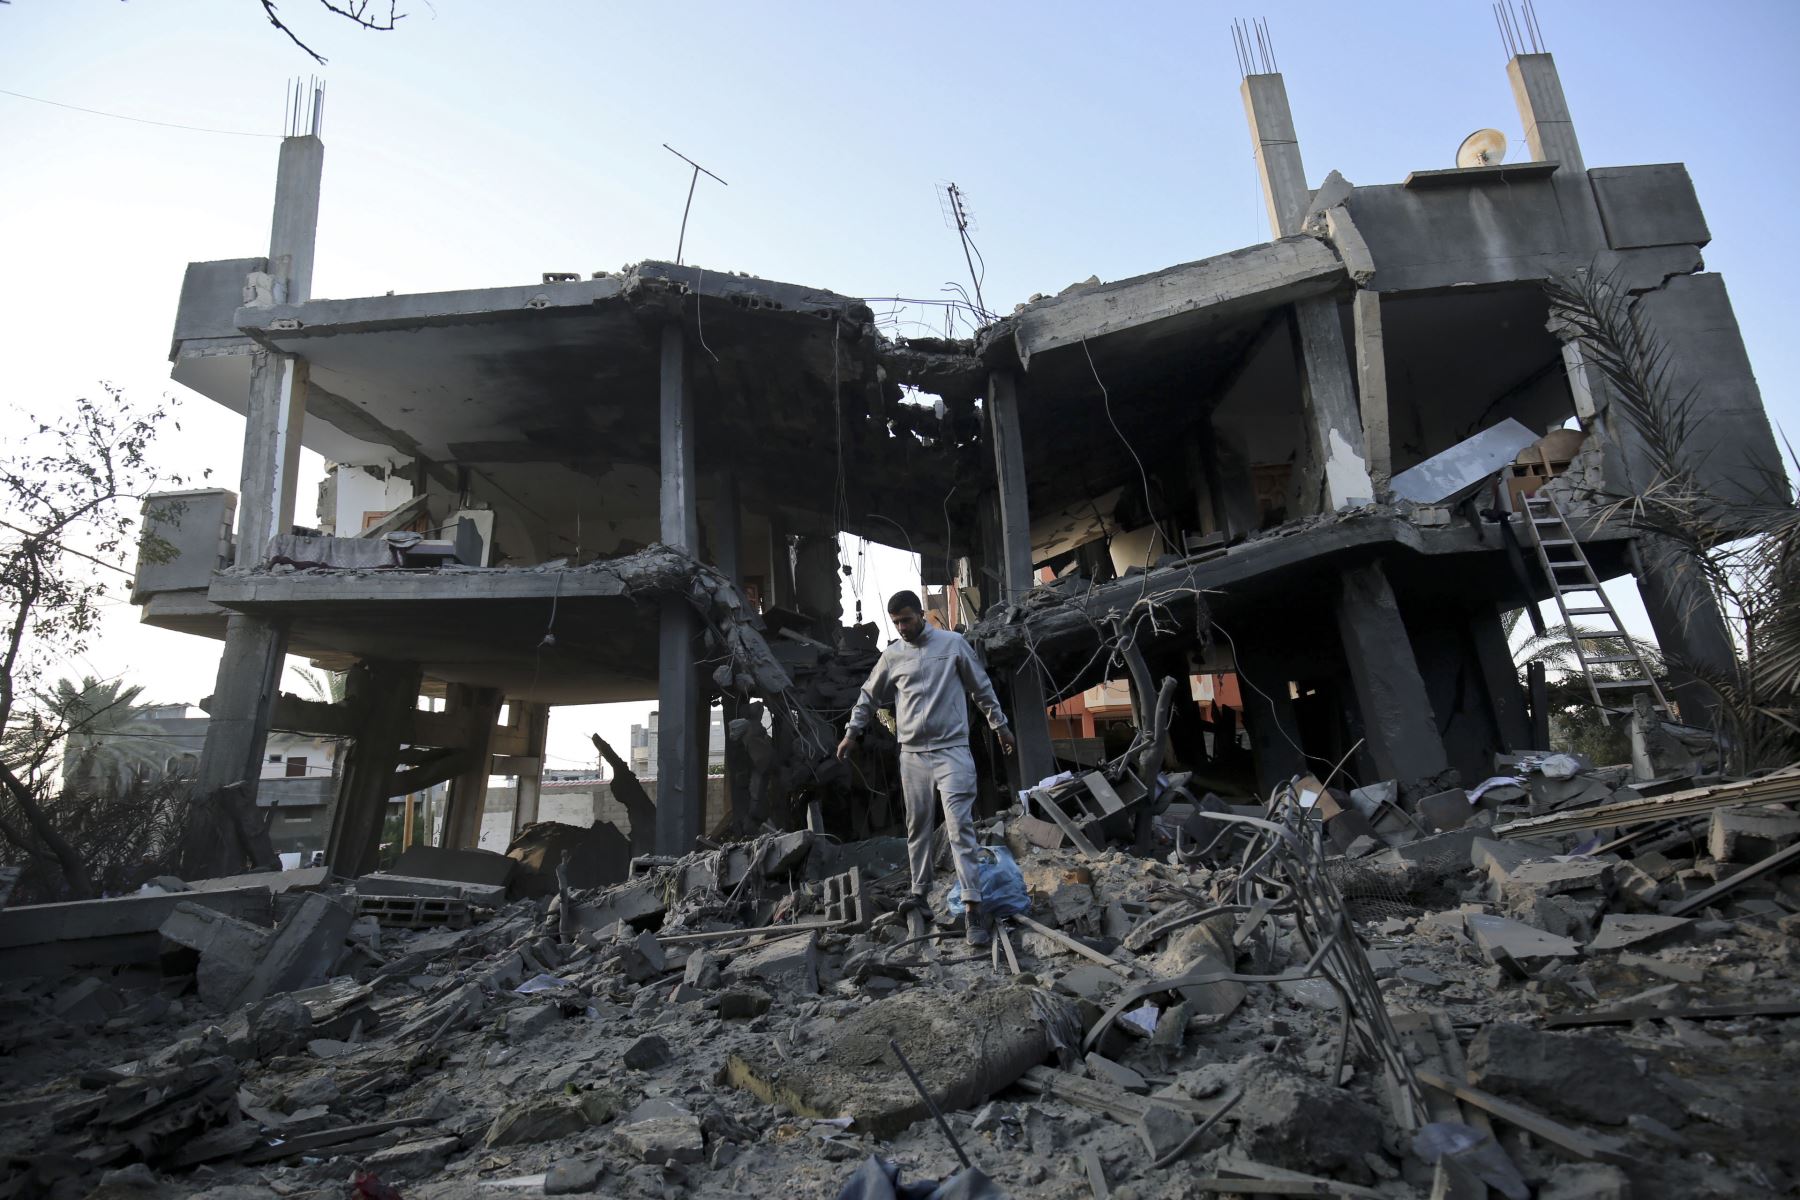 Una fotografíamuestra una bola de fuego sobre el edificio que alberga la estación de televisión de Al-Aqsa de Hamas en la Franja de Gaza durante un ataque aéreo israelí. - Los ataques aéreos israelíes en Gaza mataron a tres palestinos y destruyeron un edificio de Hamas TV el 12 de noviembre después de un bombardeo de cohetes desde el enclave, ya que la violencia renovada amenazaba con descarrilar los esfuerzos para poner fin a meses de disturbios.  AFP